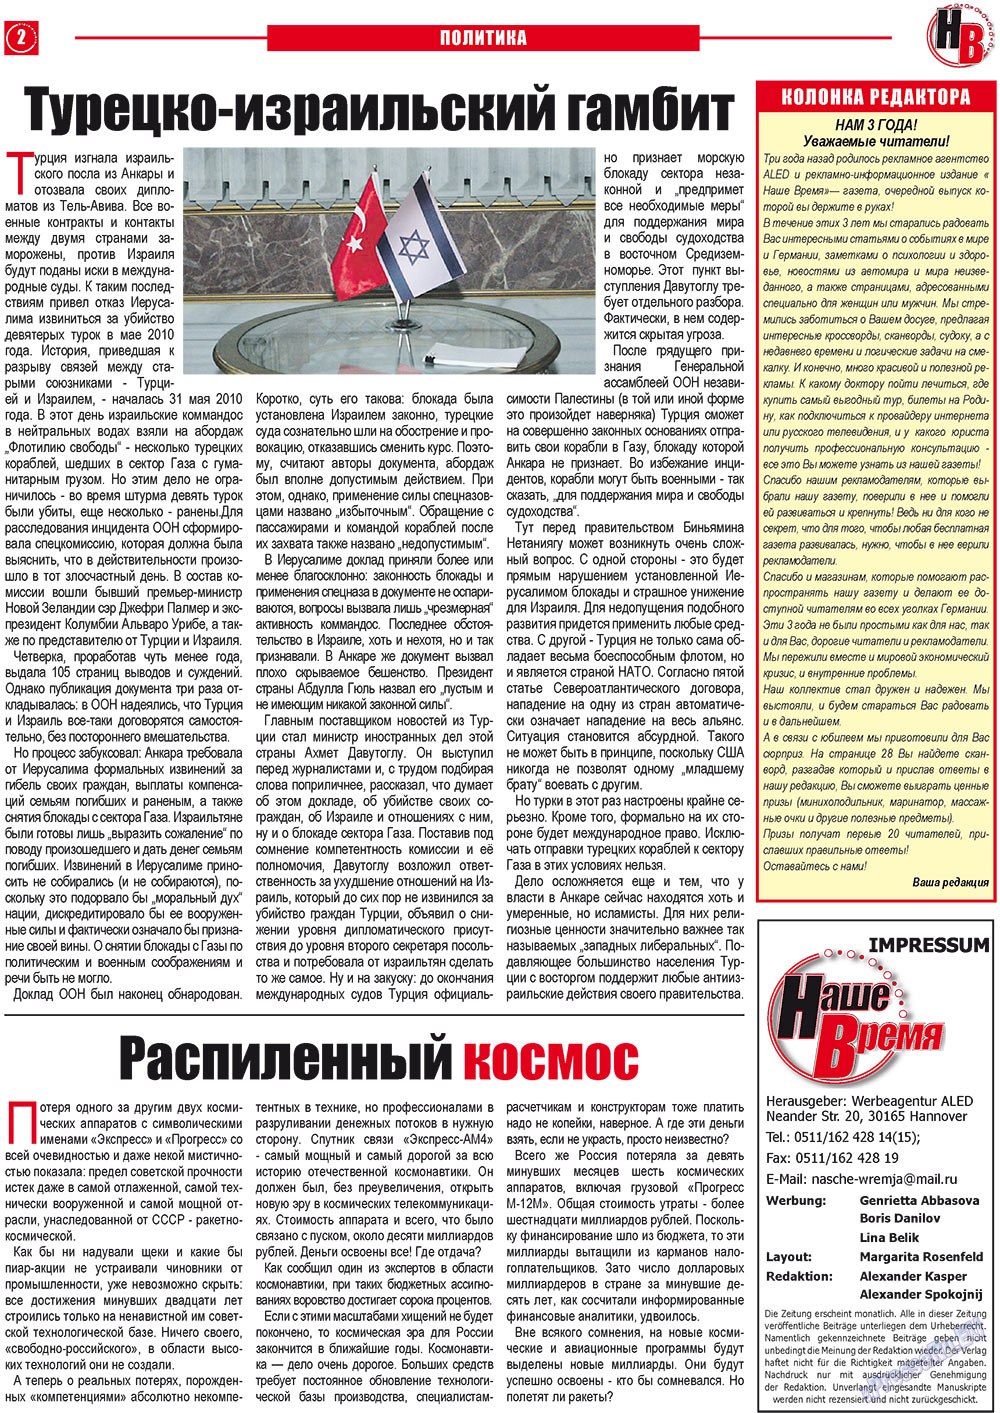 Наше время, газета. 2011 №9 стр.2